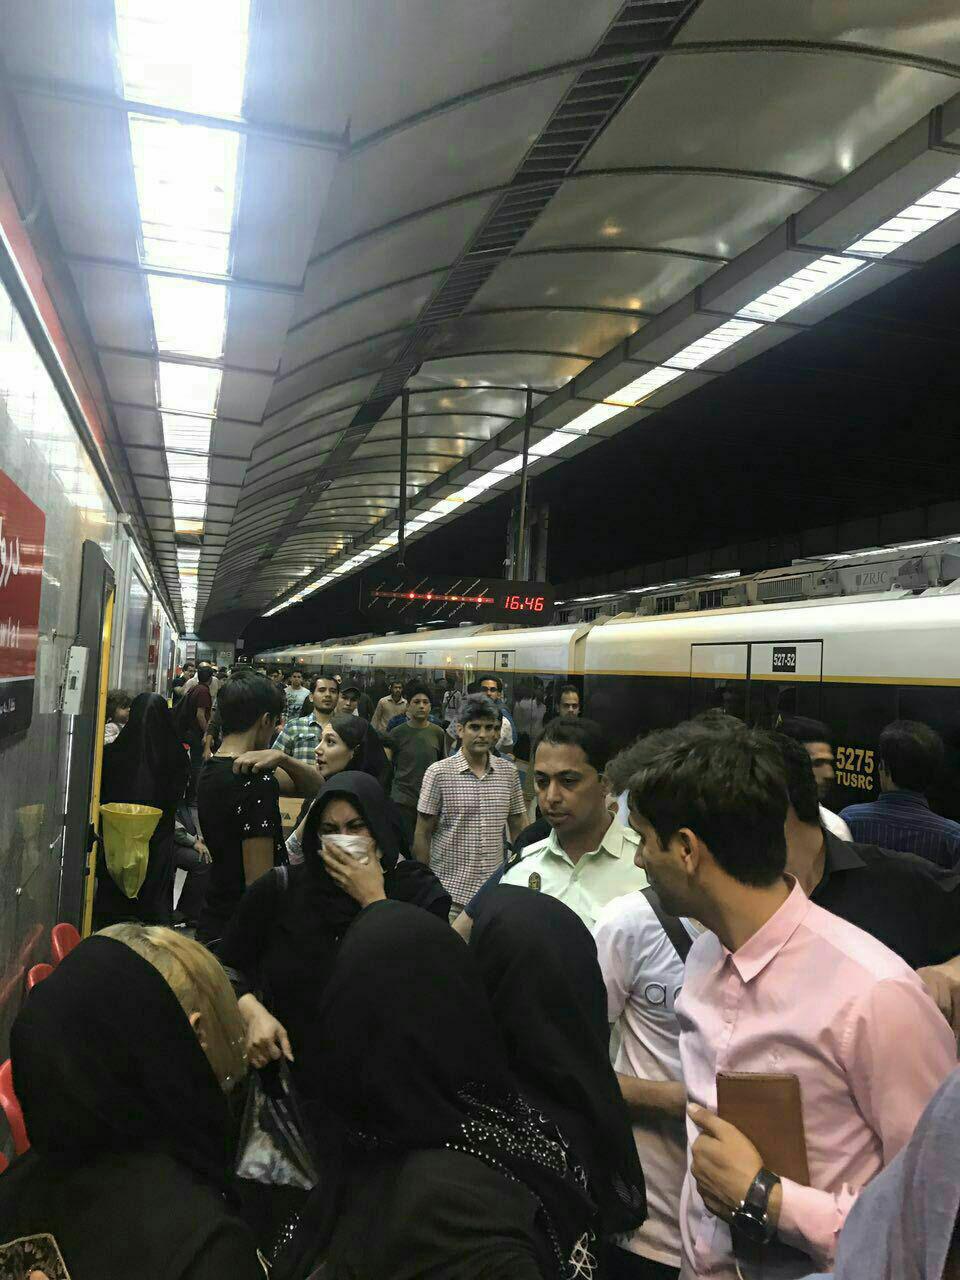  اقدام به خودکشی یک دختر در متروی دروازه دولت 